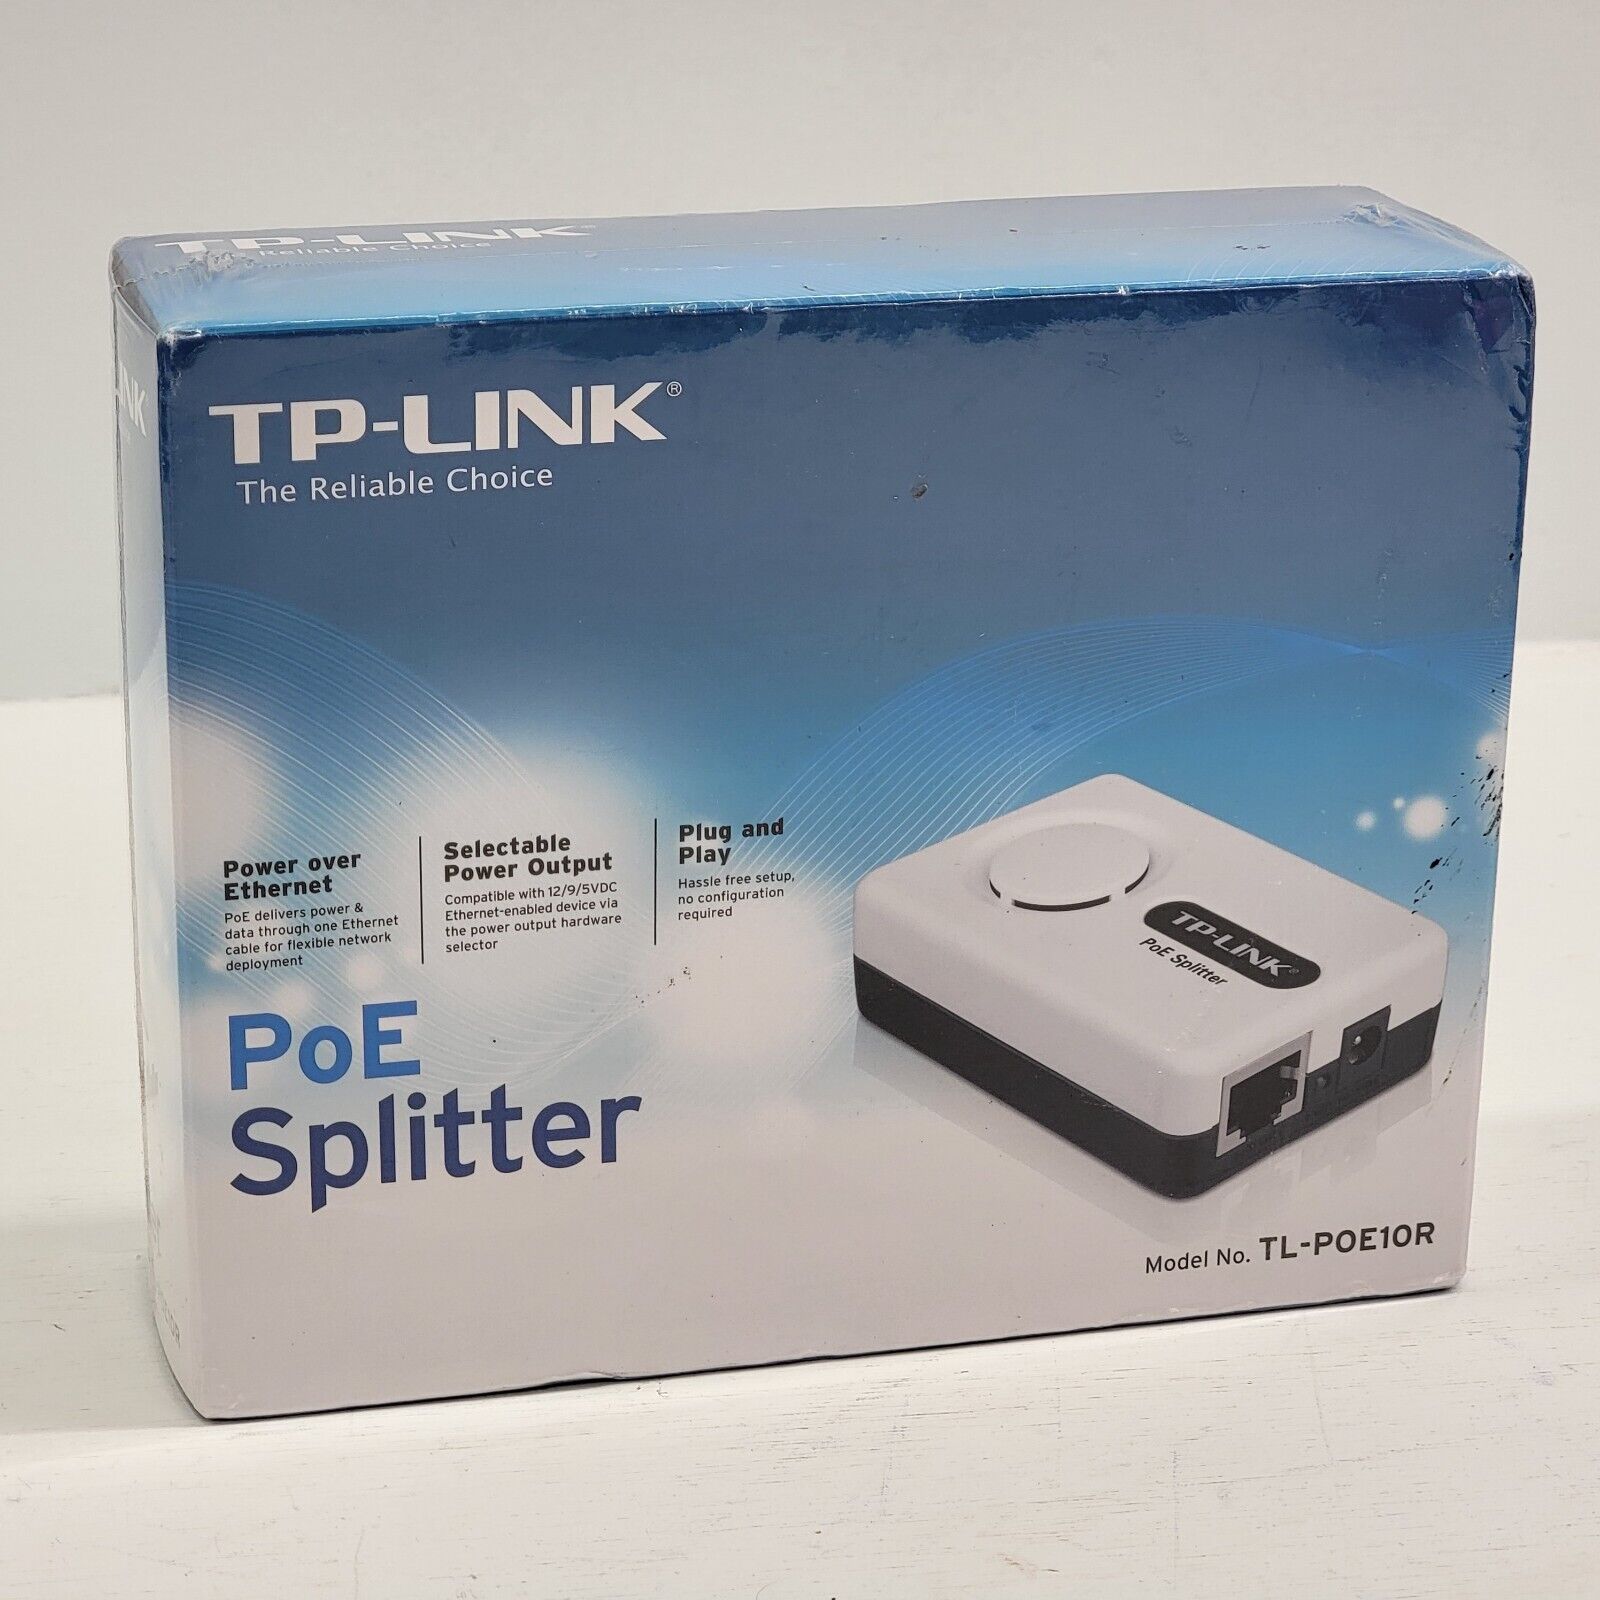 TP-LINK® PoE Splitter # TL-POE10R Power Over Ethernet Data NEW SEALED